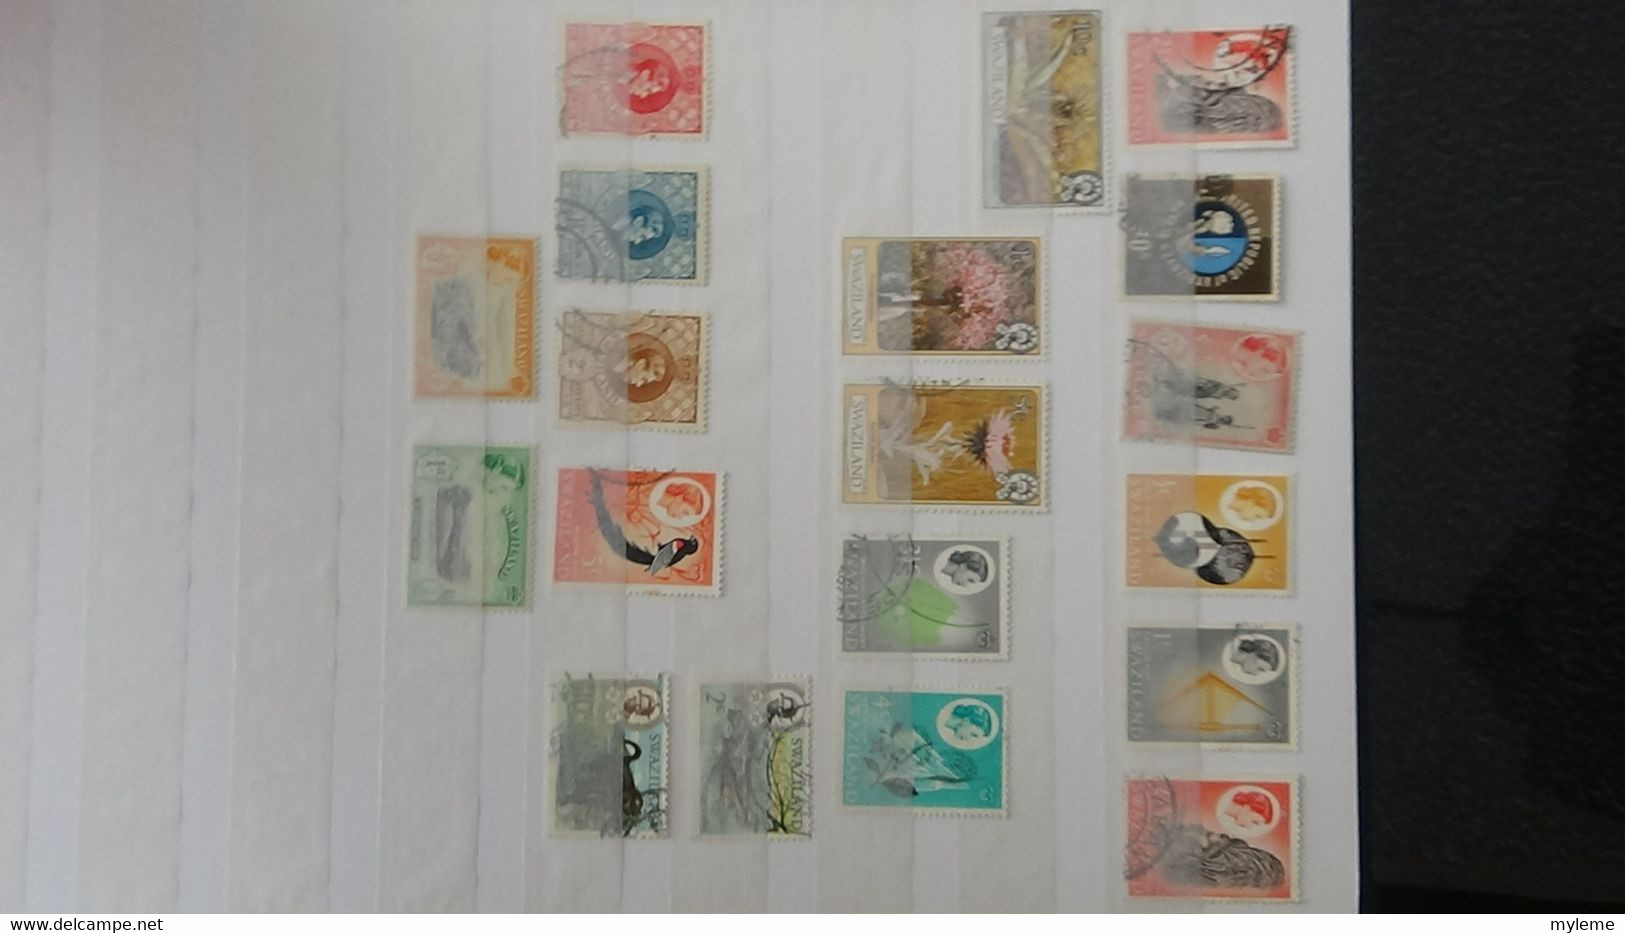 AC386 Collection de timbres majorité oblitérés de différents pays dont France carnet O Rolland ** sans agrafe centrale